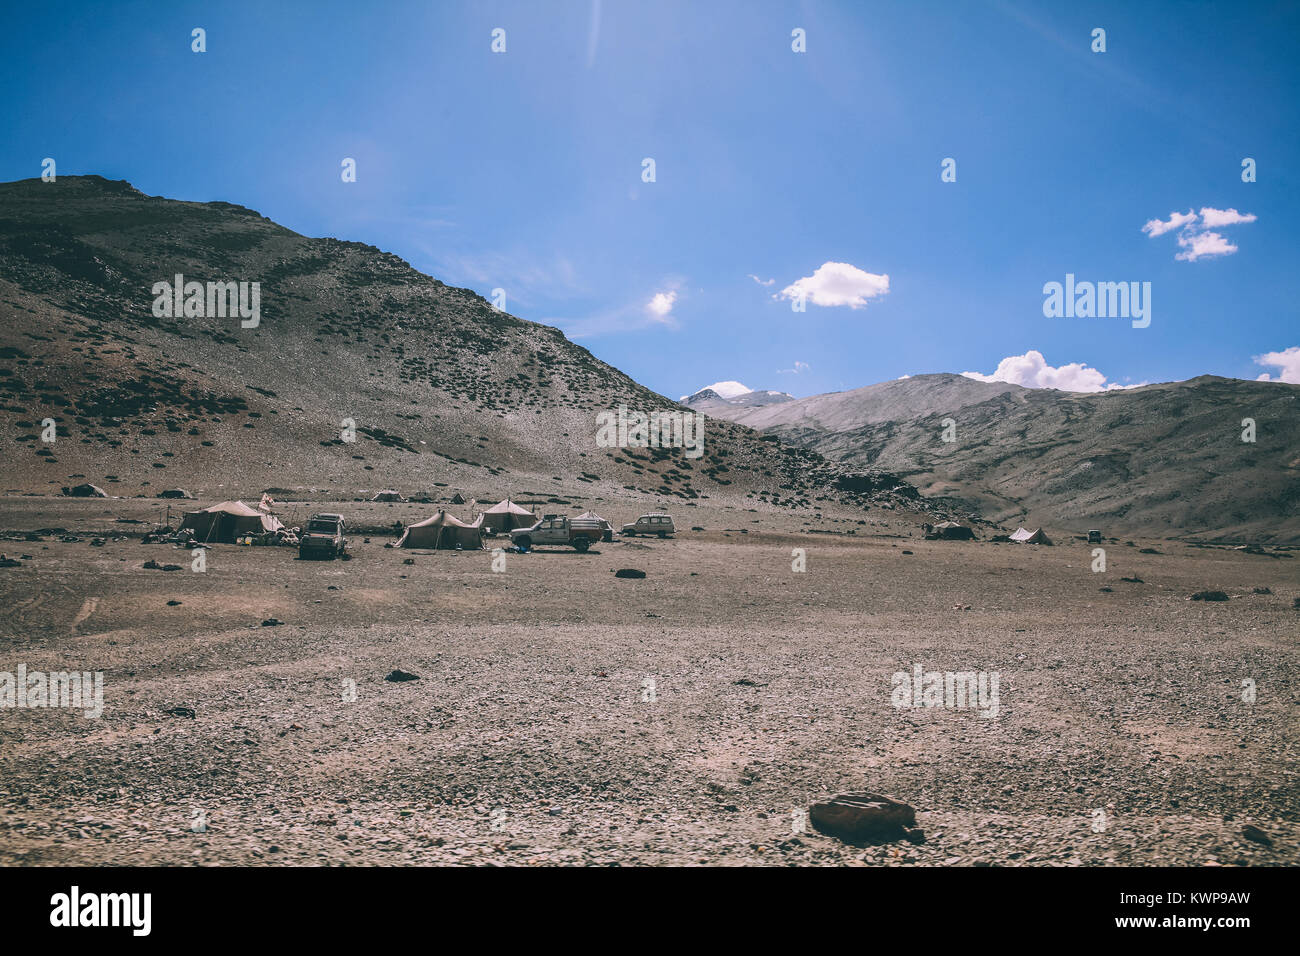 Camp de montagne avec des voitures et des tentes dans la région de Ladakh, Himalaya Indien Banque D'Images